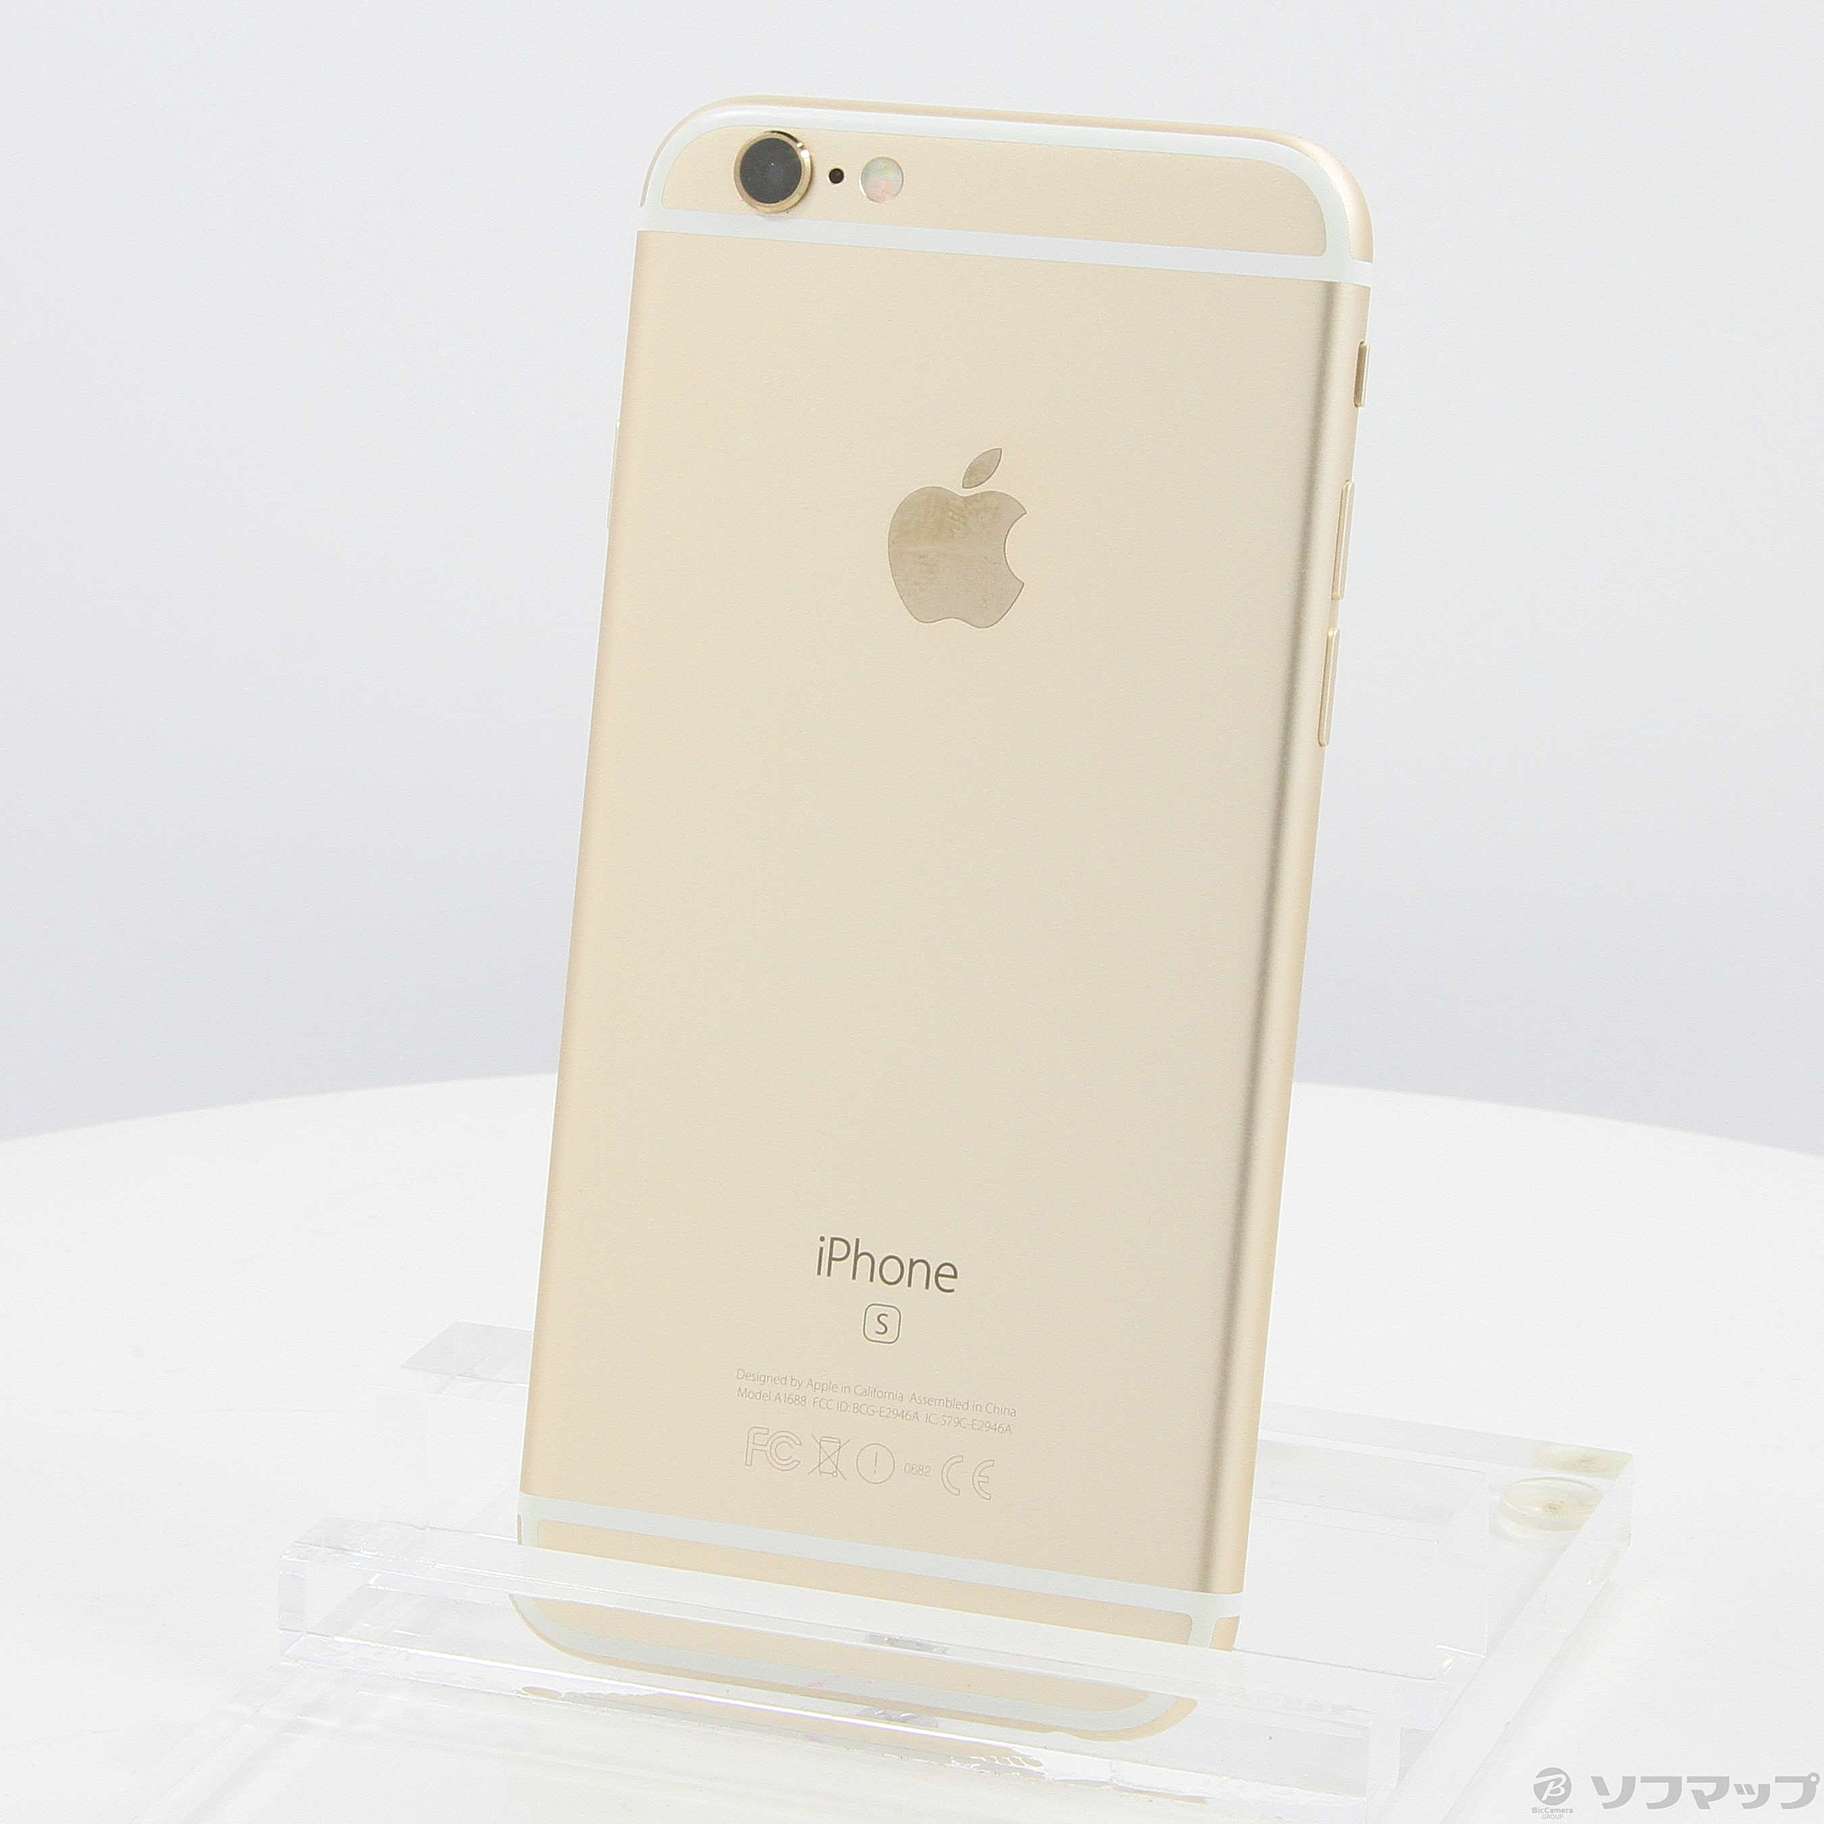 iPhone 6 Gold 16 GB SIMフリー - 携帯電話